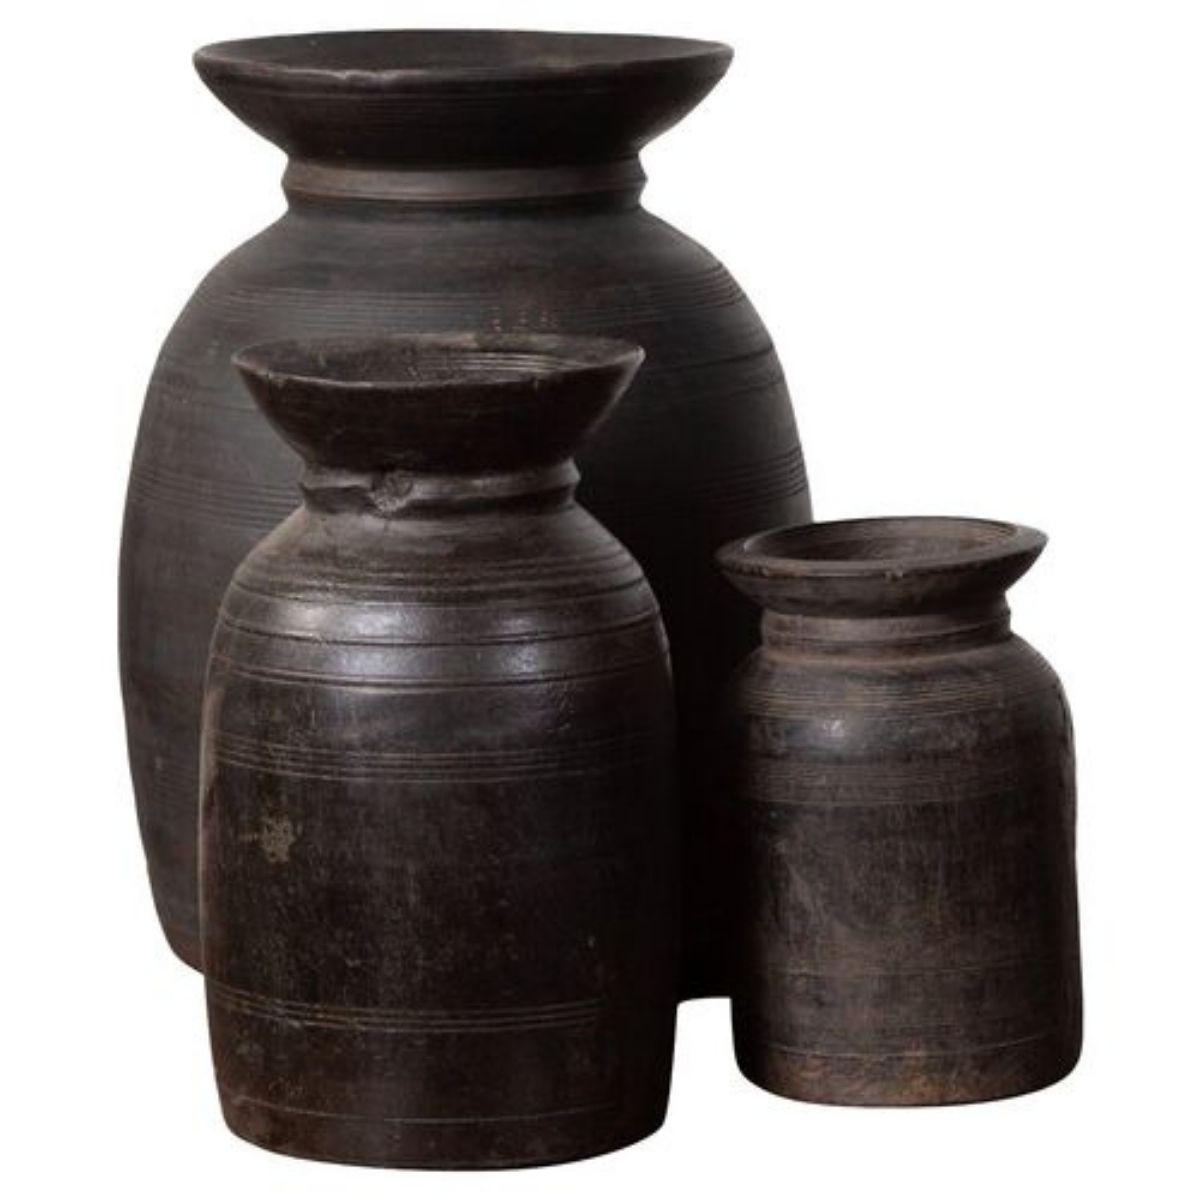 Anciens pots à ghee népalais en bois de différentes formes et dimensions, vendus par lots de trois ou cinq. Hautement décoratifs, ces pichets en bois constitueront de superbes accents dans n'importe quelle pièce, notamment dans une cuisine, une